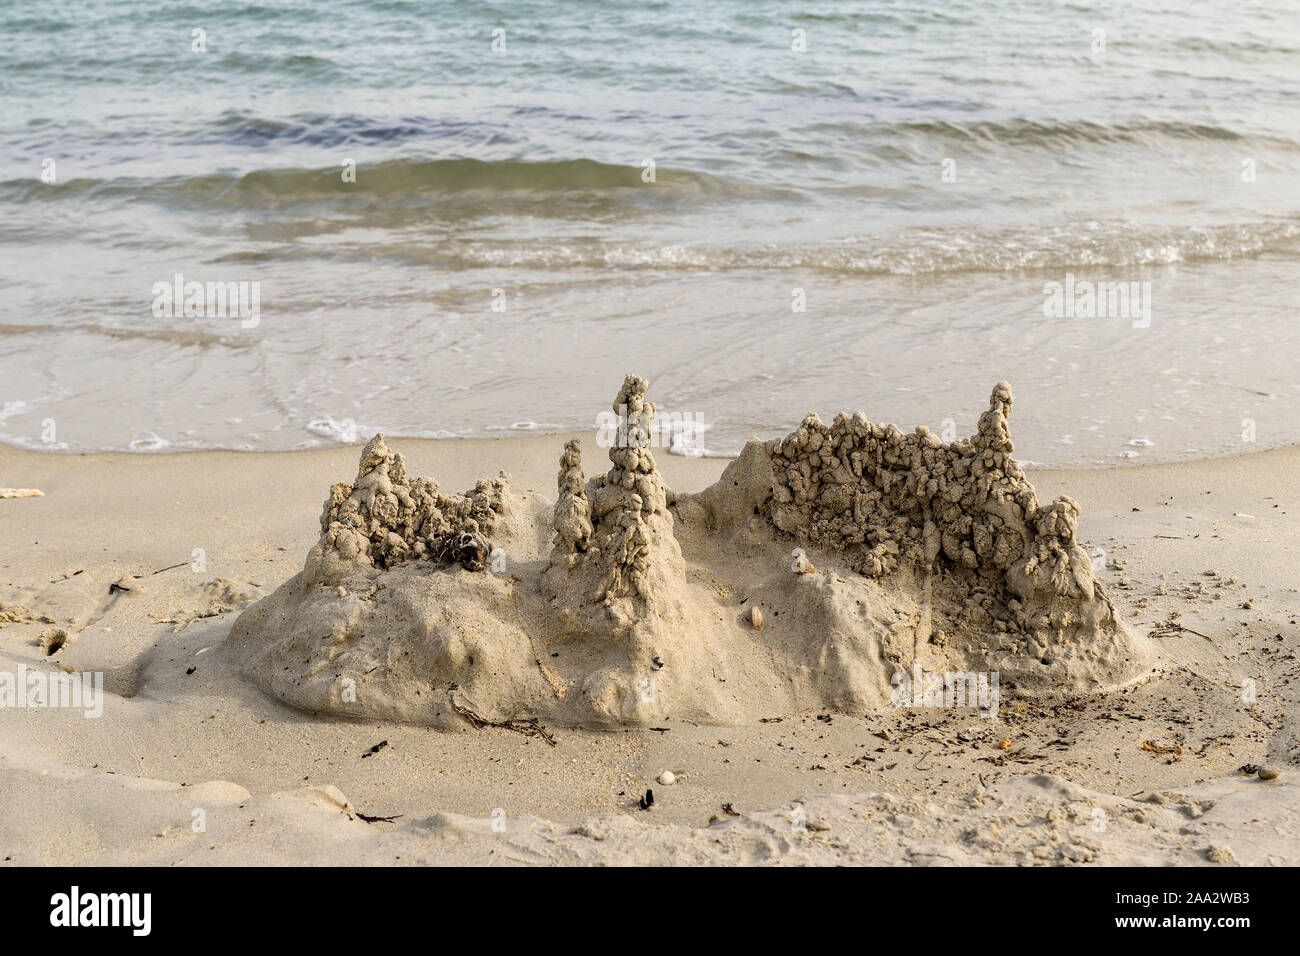 Castello di sabbia sulla spiaggia, uomini Du beach a Carnac, Bretagna Francia Foto Stock